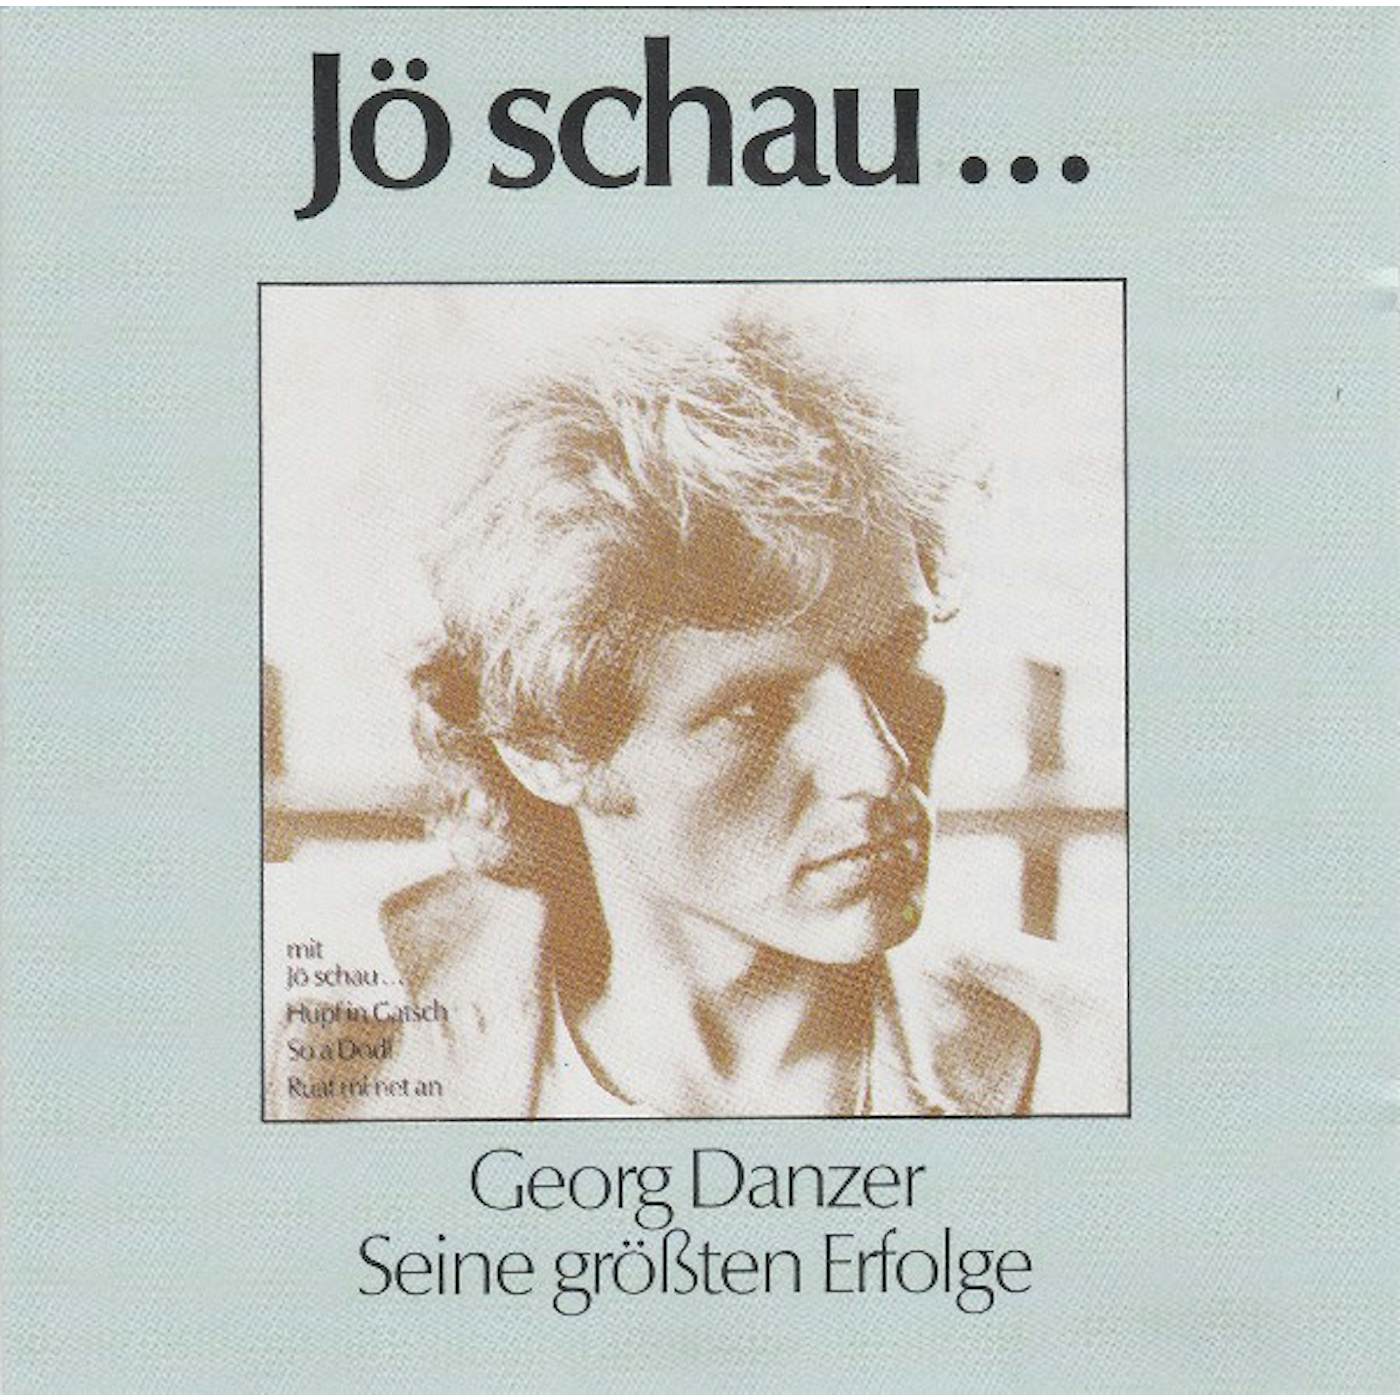 Georg Danzer JO SCHAU... SEINE GROSSTEN ERFOLGE CD